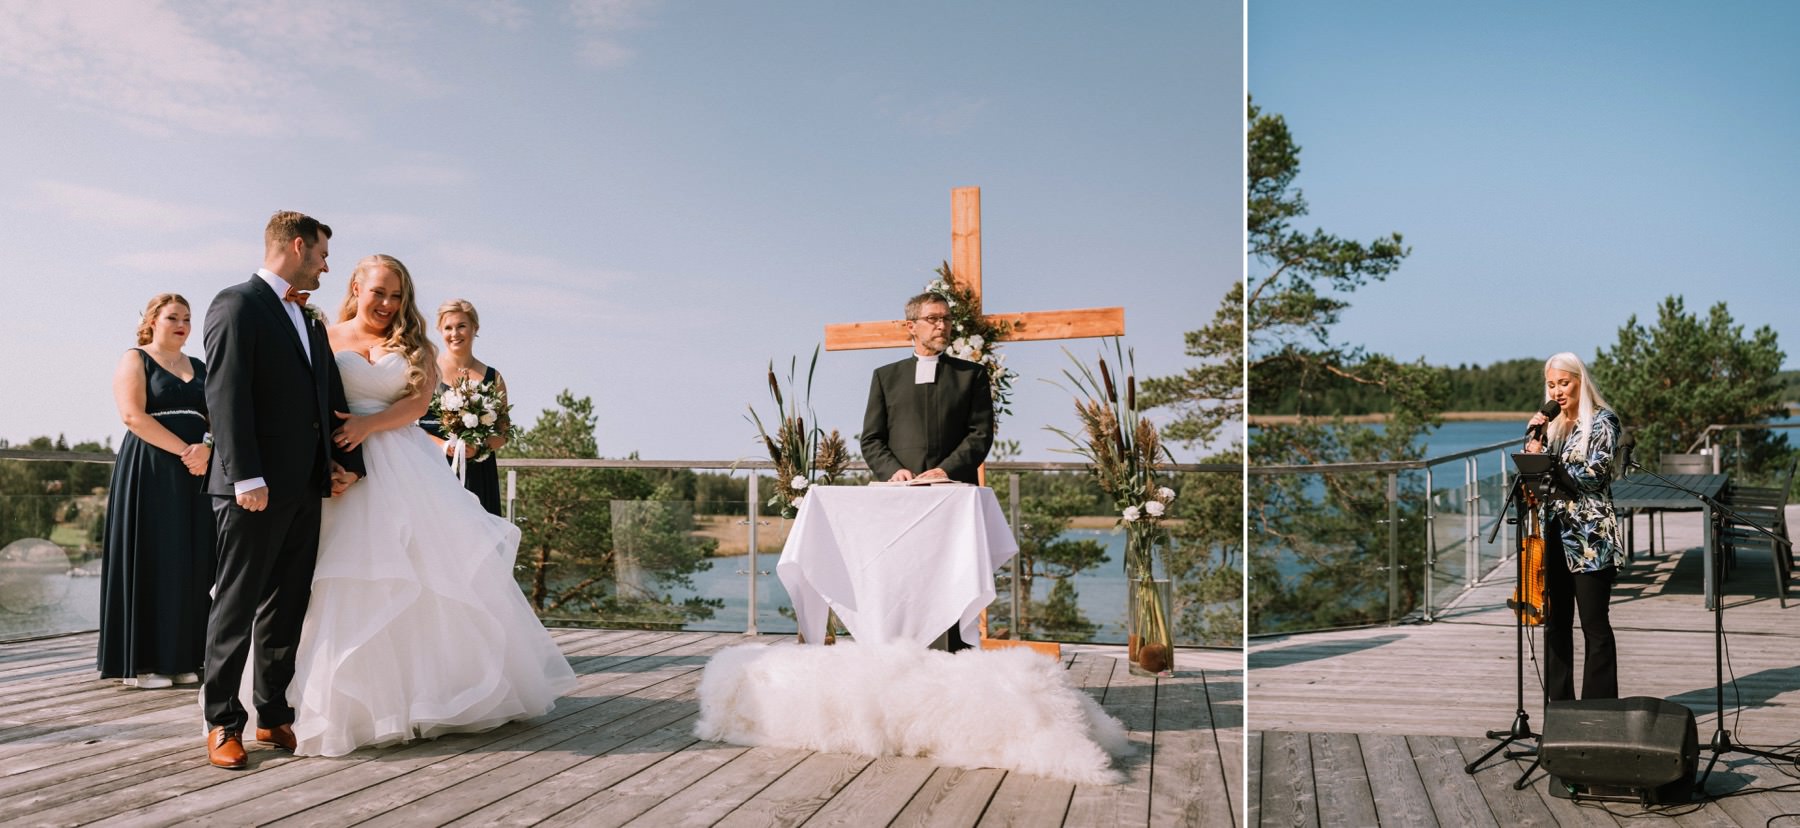 Christ-centered wedding Finland